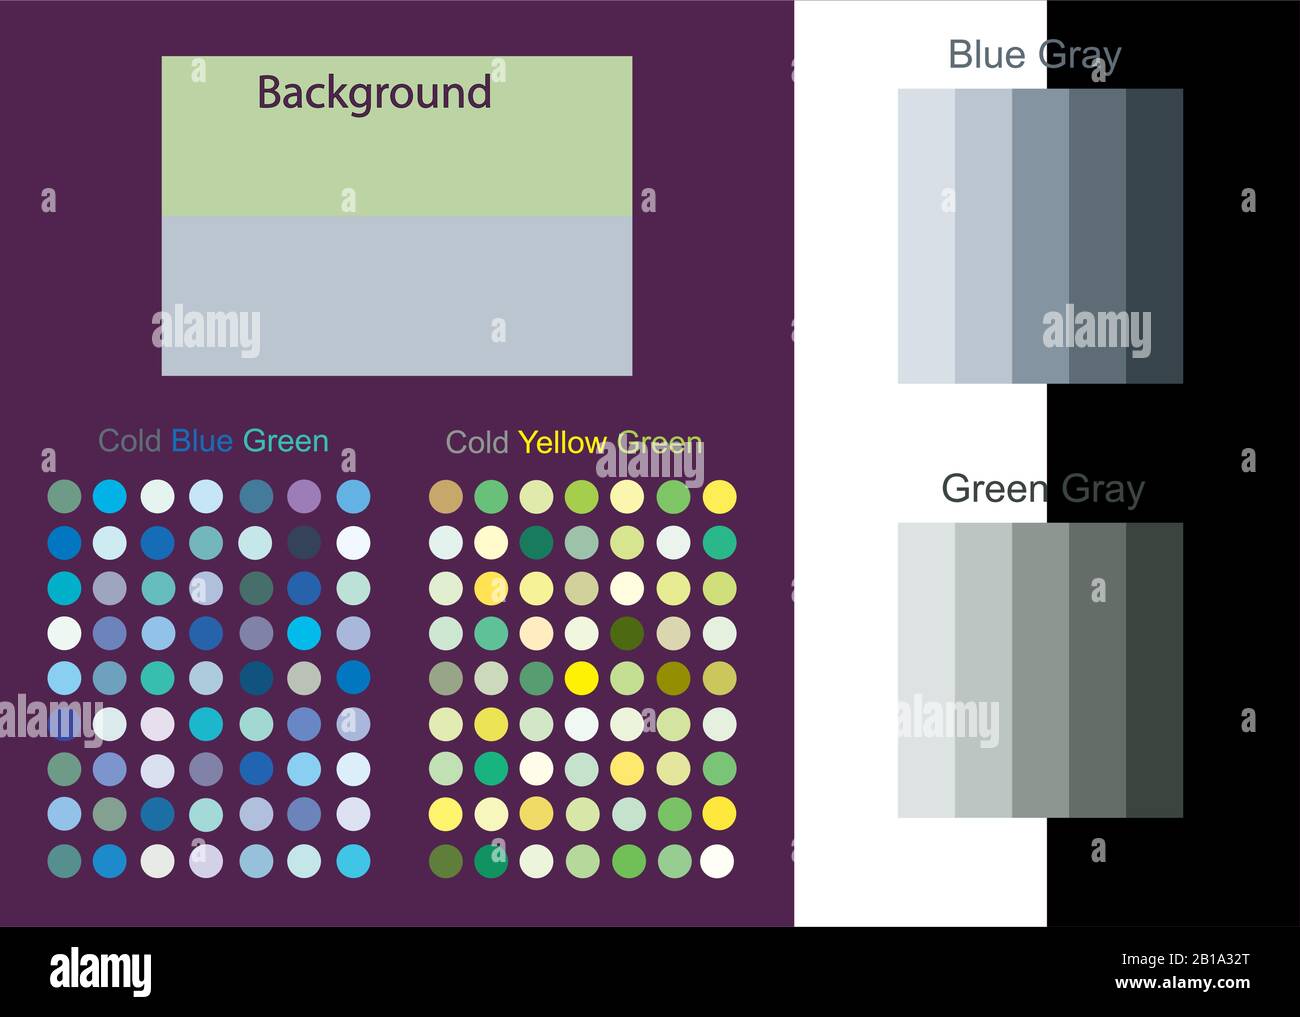 Vektorgrafiken der Farbtrendpalette. Set Samples Farbdesign für Innenraumideen, Mode, Stoffe und mehr Themen Designkunst Stock Vektor